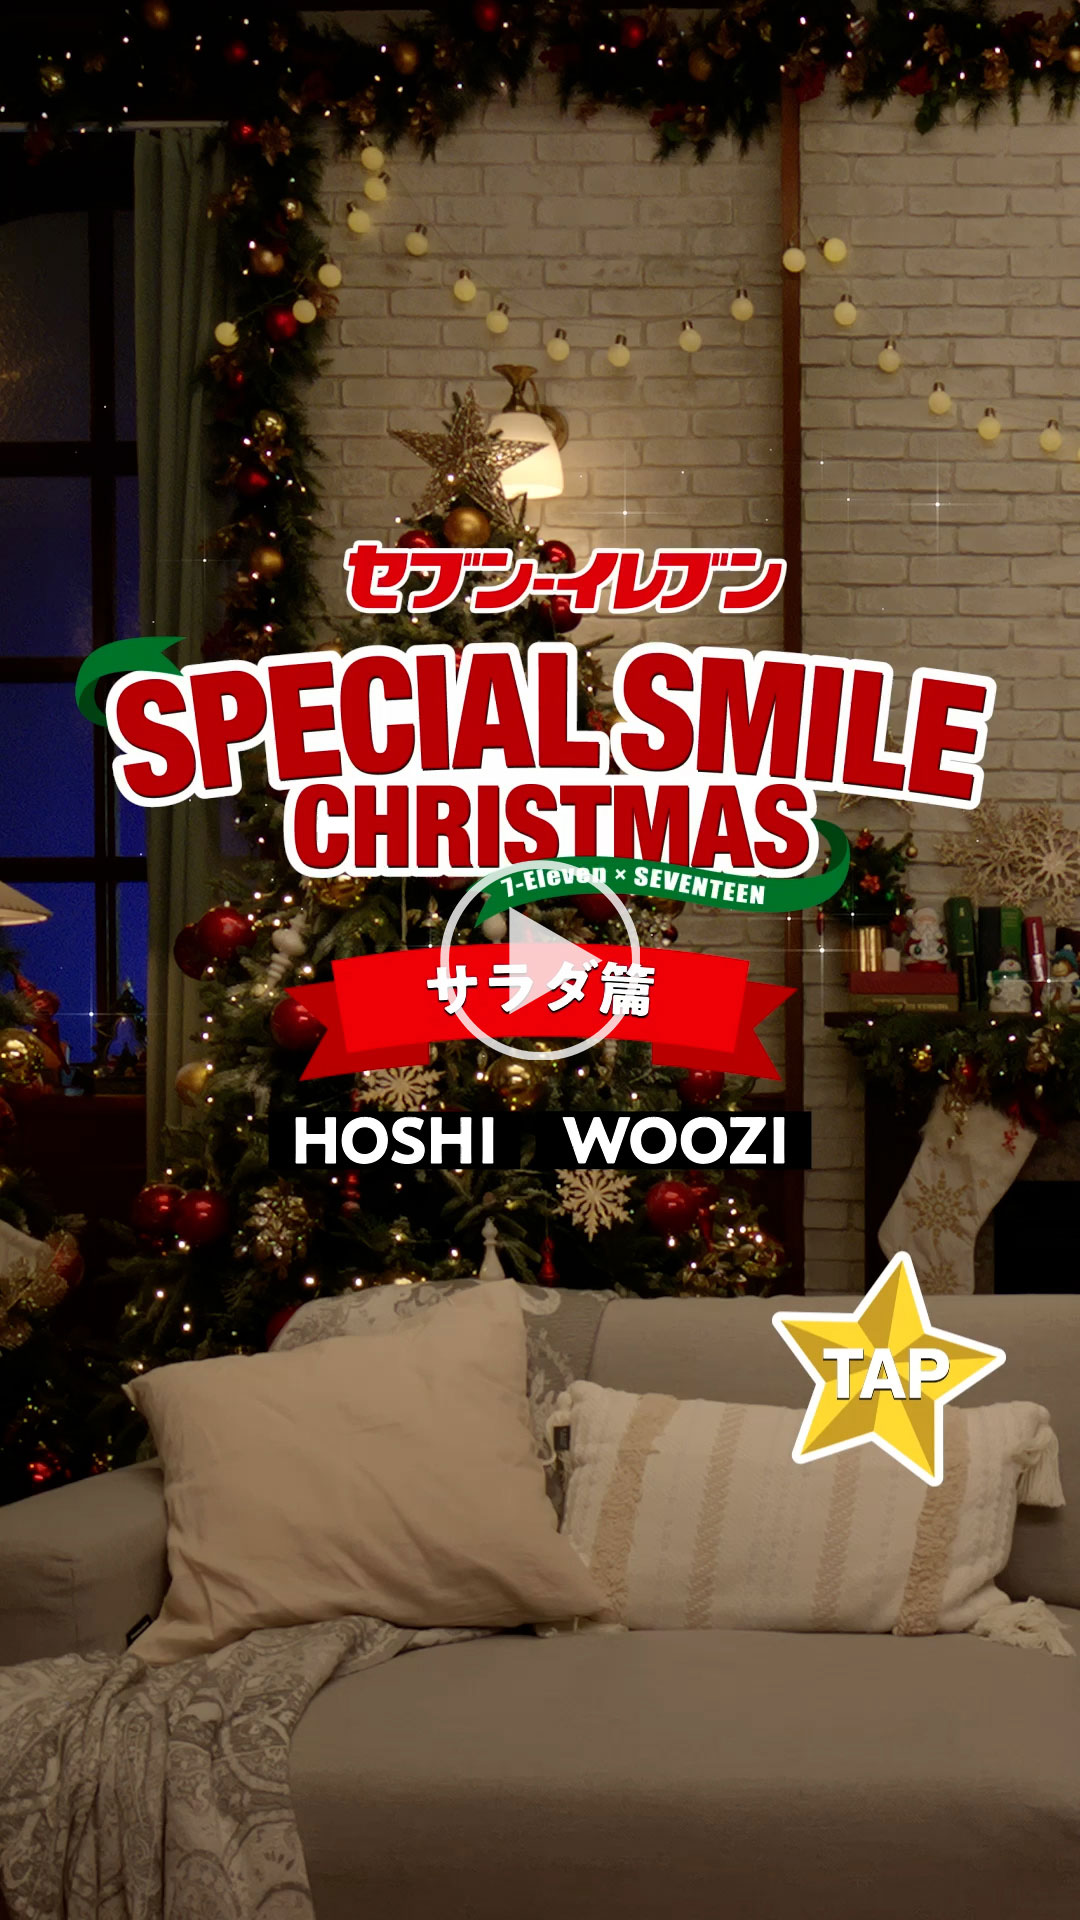 「セブン‐イレブン SPECIAL SMILE CHRISTMAS サラダ篇」 YouTubeで見る